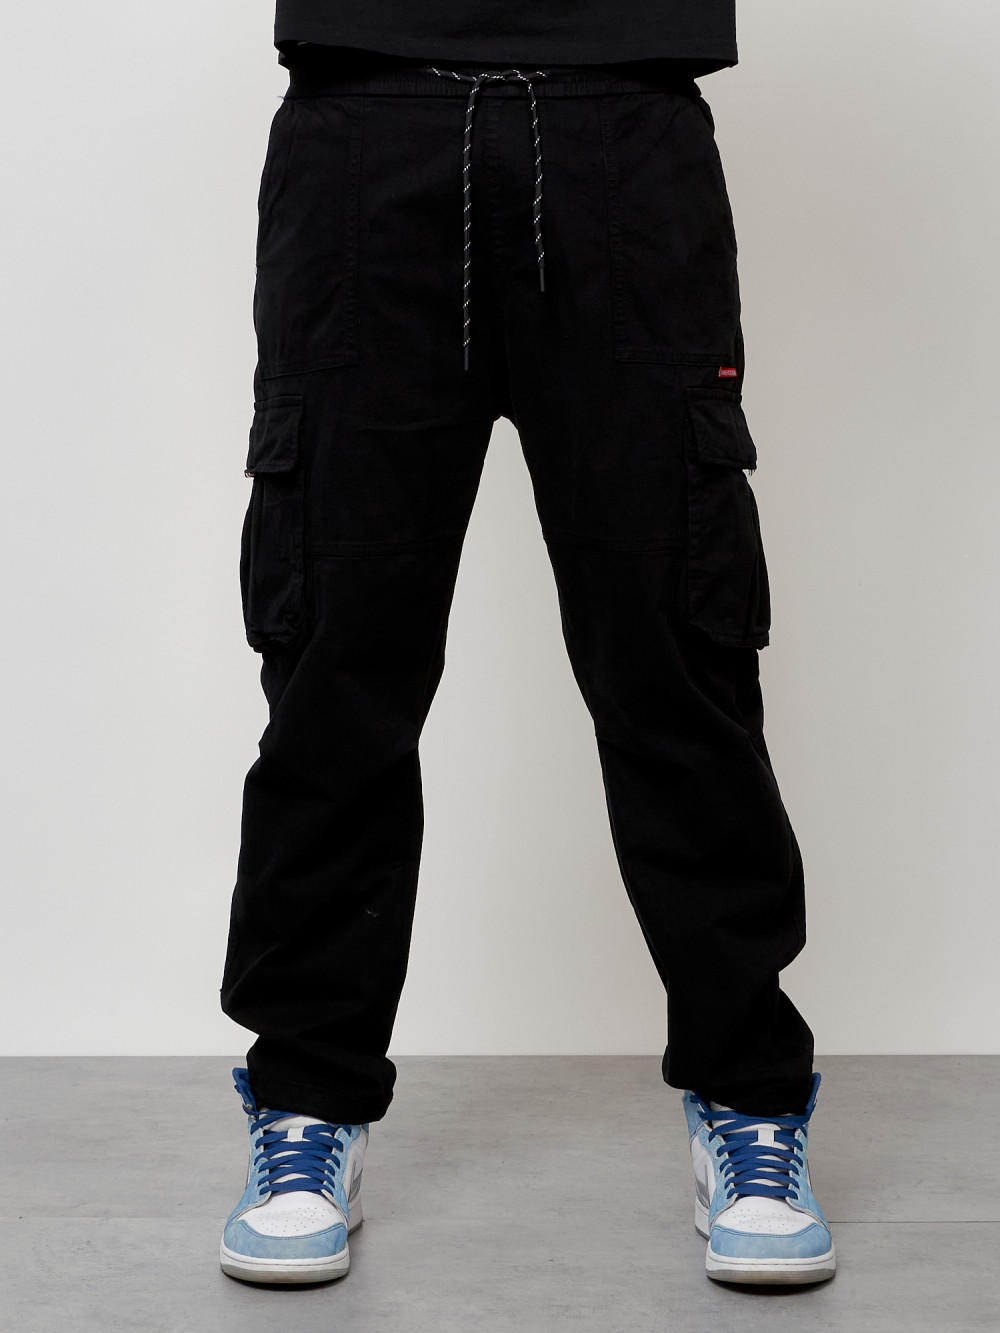 Джинсы карго мужские с накладными карманами черного цвета 2421Ch